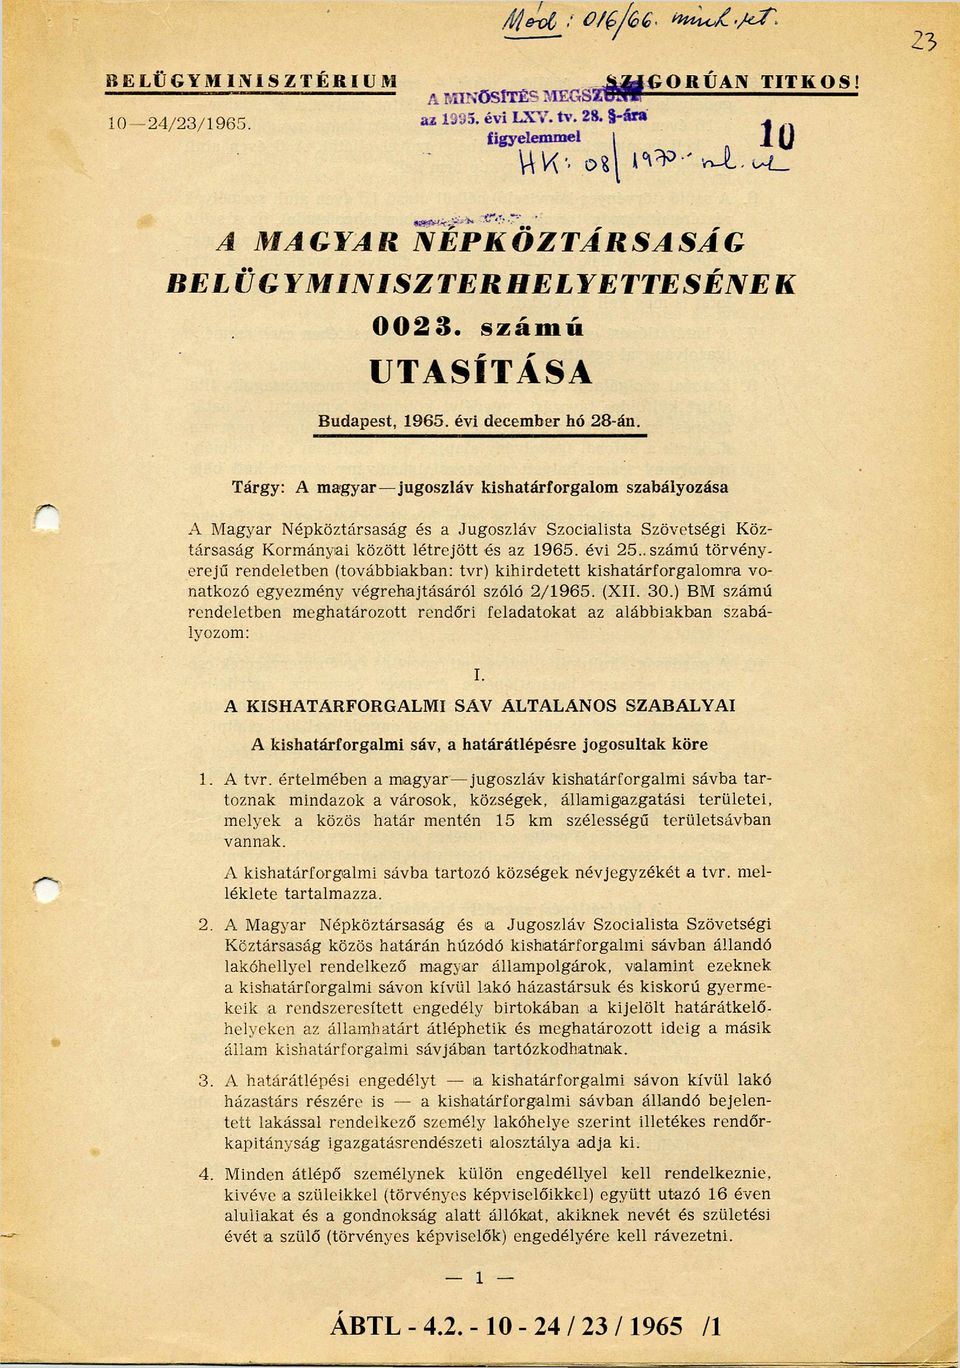 Tárgy: A m agyar jugoszláv kishatárforgalom szabályozása A M agyar N épköztársaság és a Jugoszláv Szocialista Szövetségi Köz társa sá g Korm ányai között lé tre jö tt és az 1965. évi 2 5.